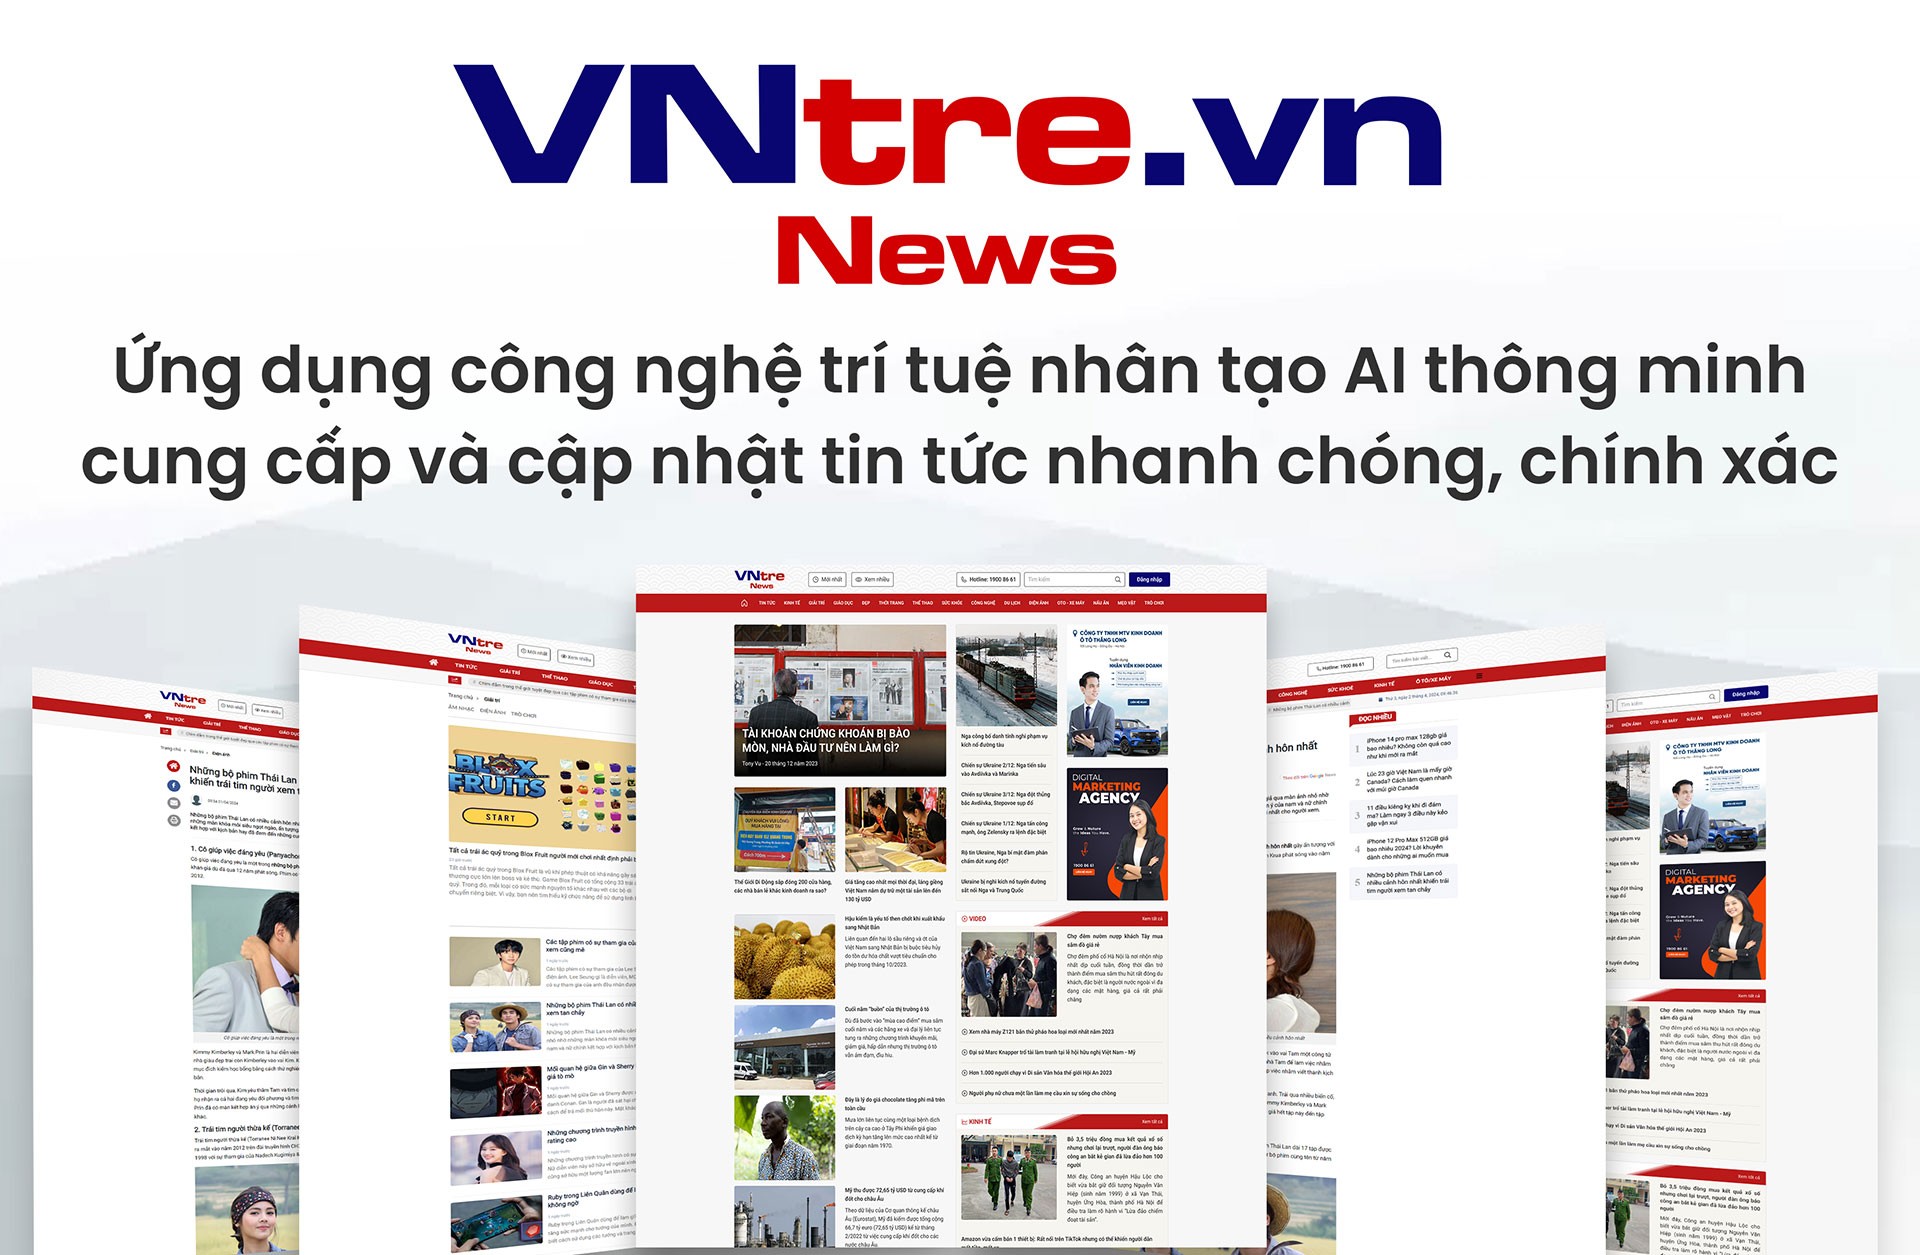 COO Dung Bùi - Nữ doanh nhân tài năng và hành trình xây dựng trang tin điện tử VNtre.vn